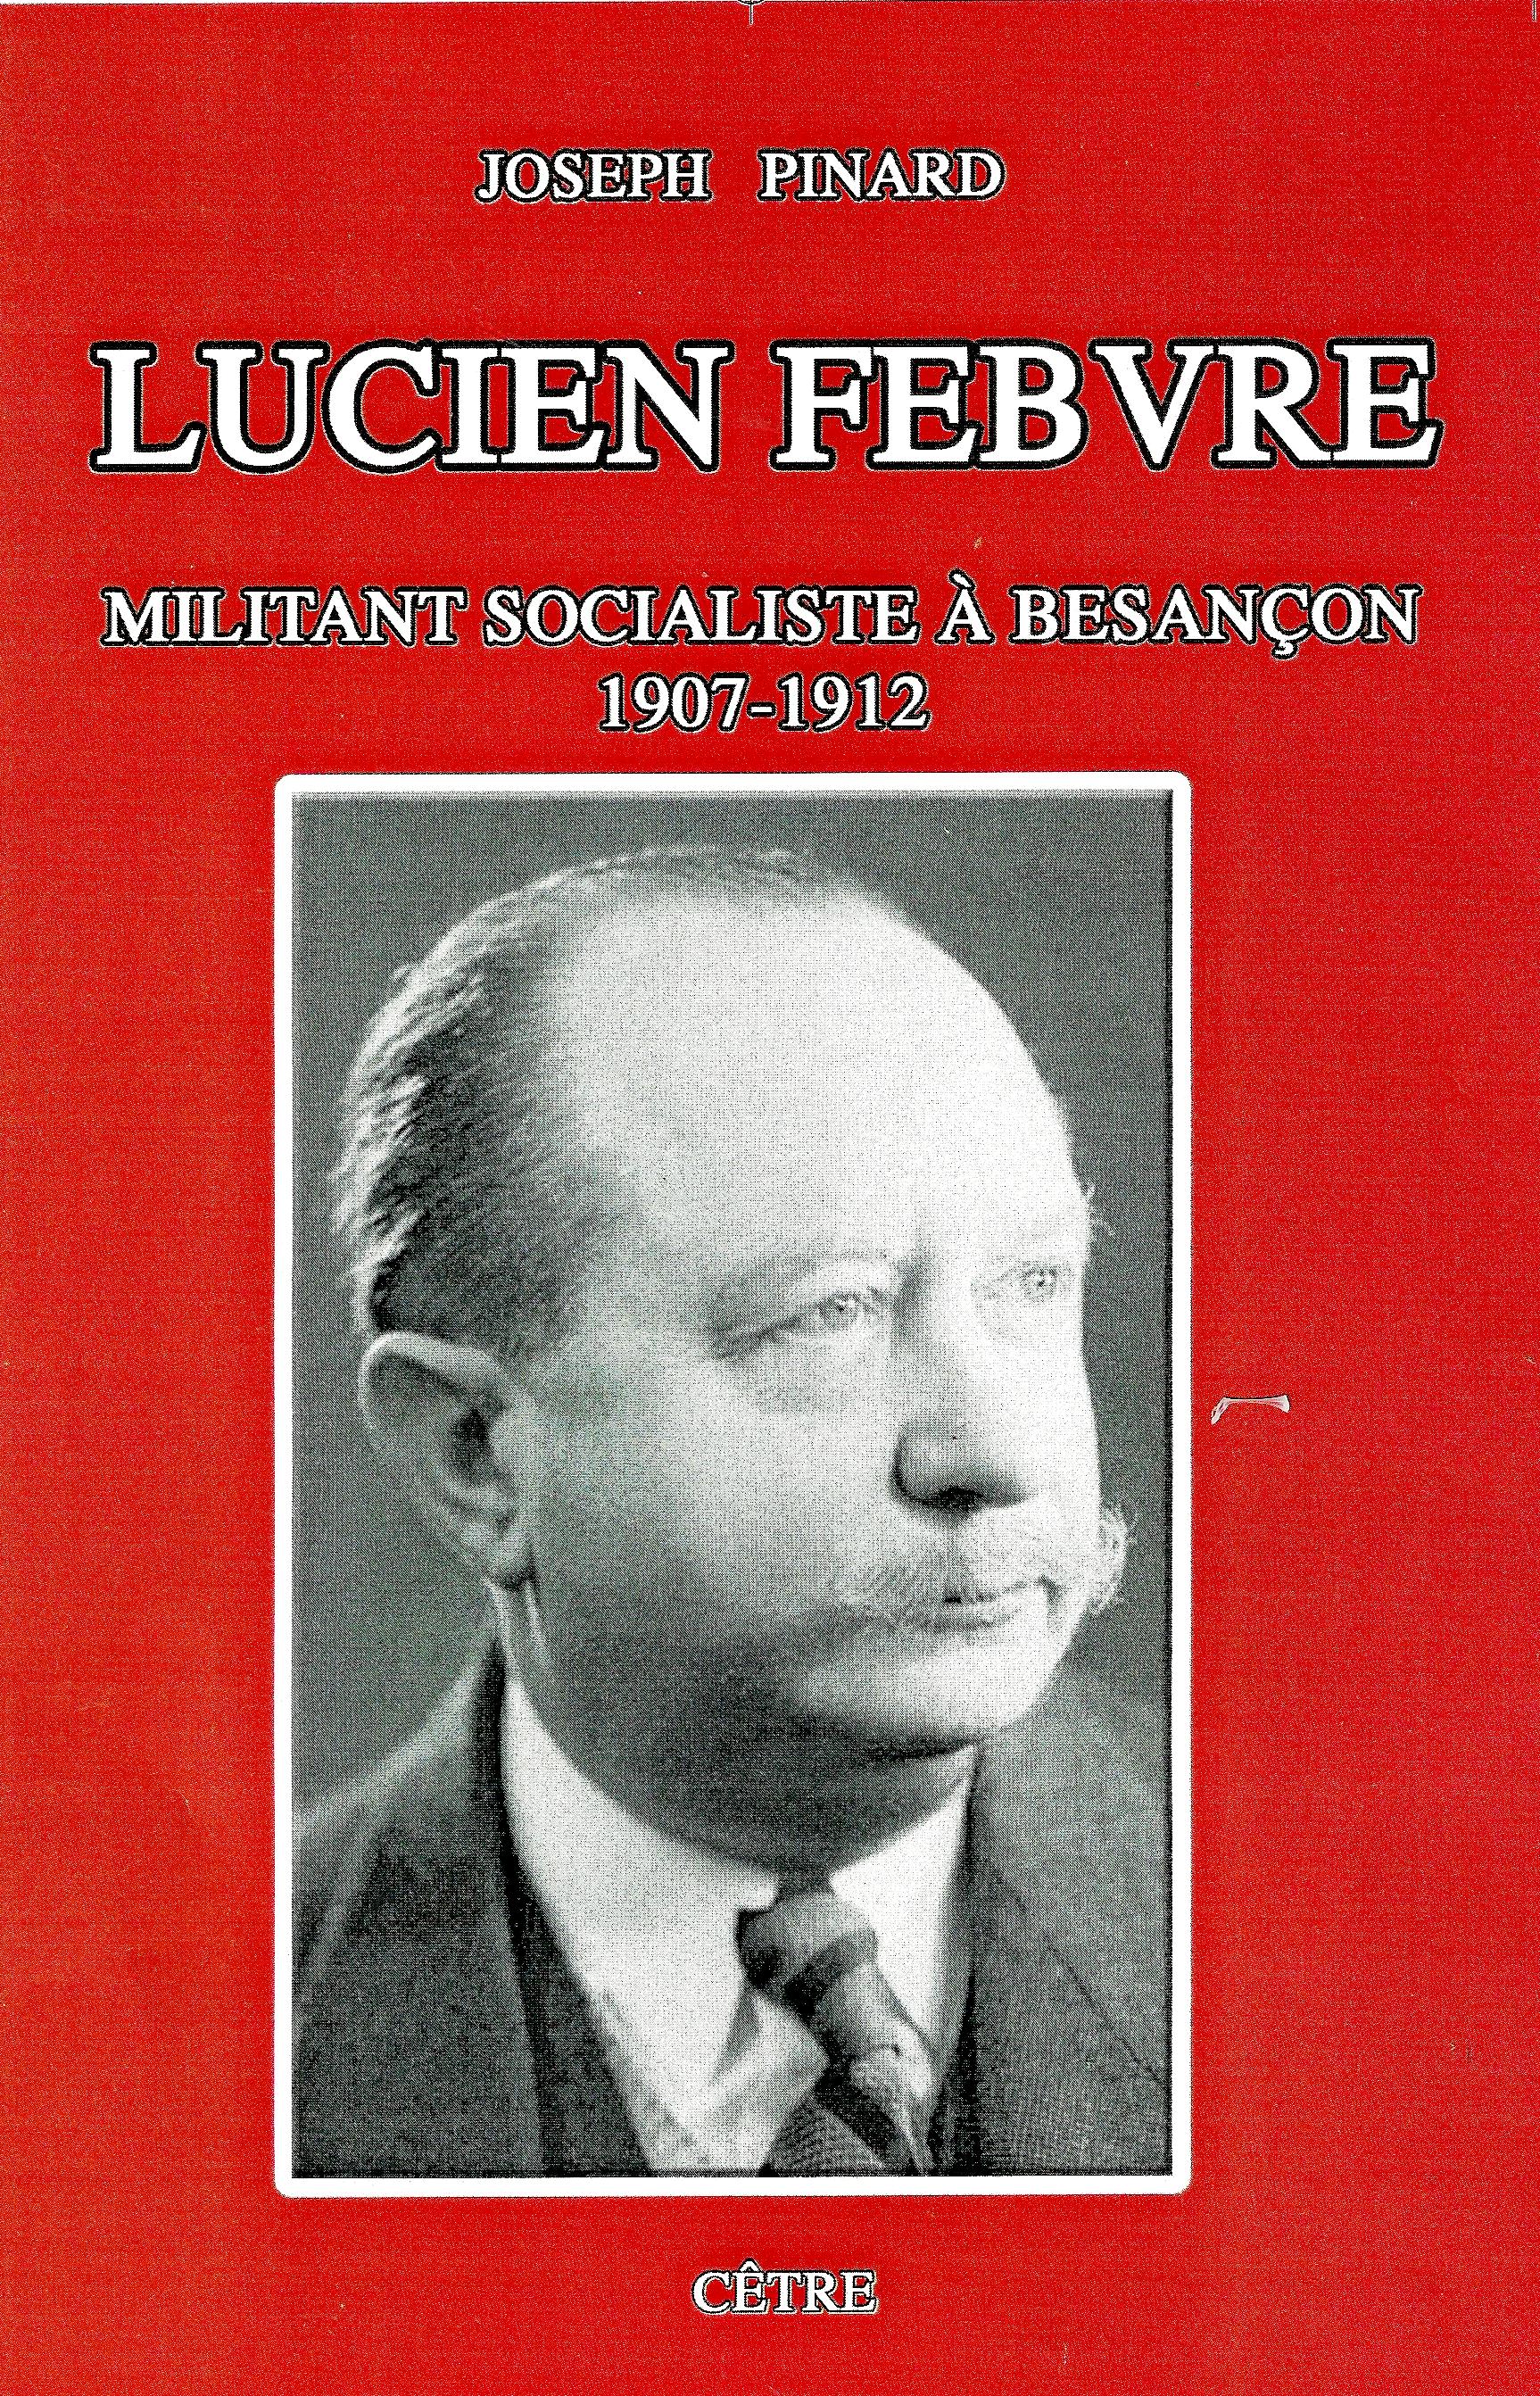 LUCIEN FEBVRE, MILITANT SOCIALISTE A BESANCON, 1907-1912